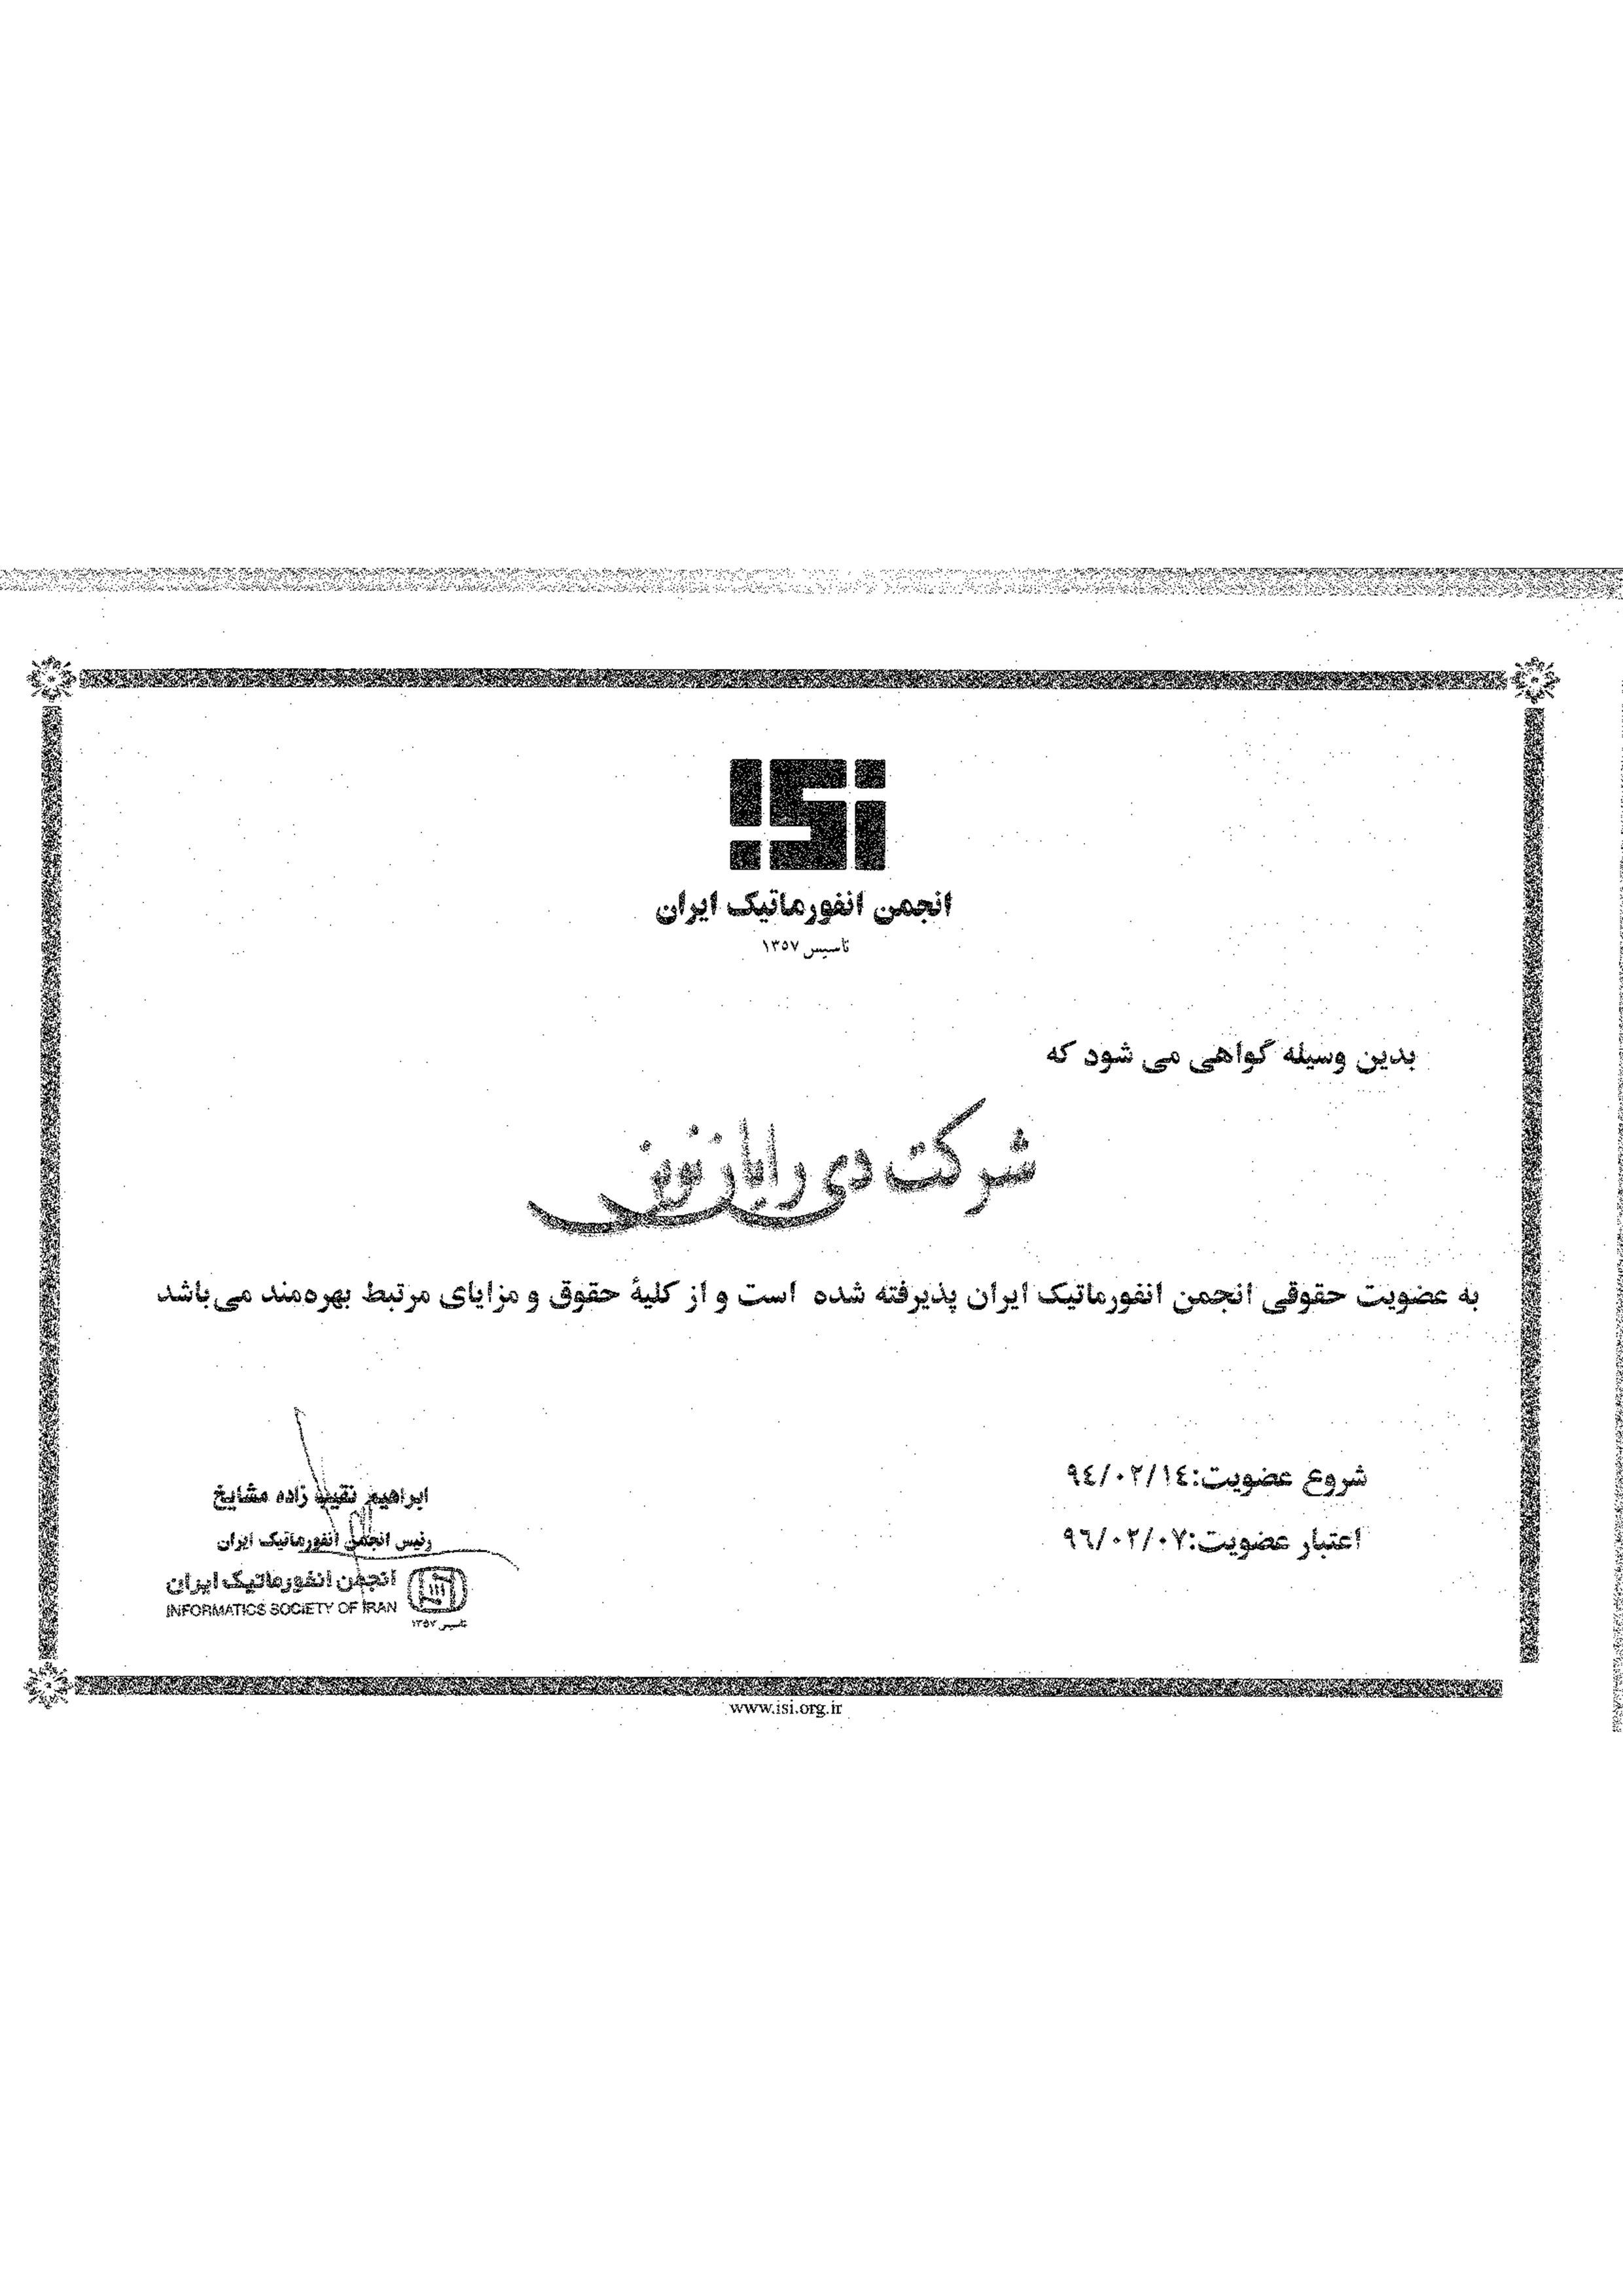 عضویت در انجمن انفورماتیک ایران